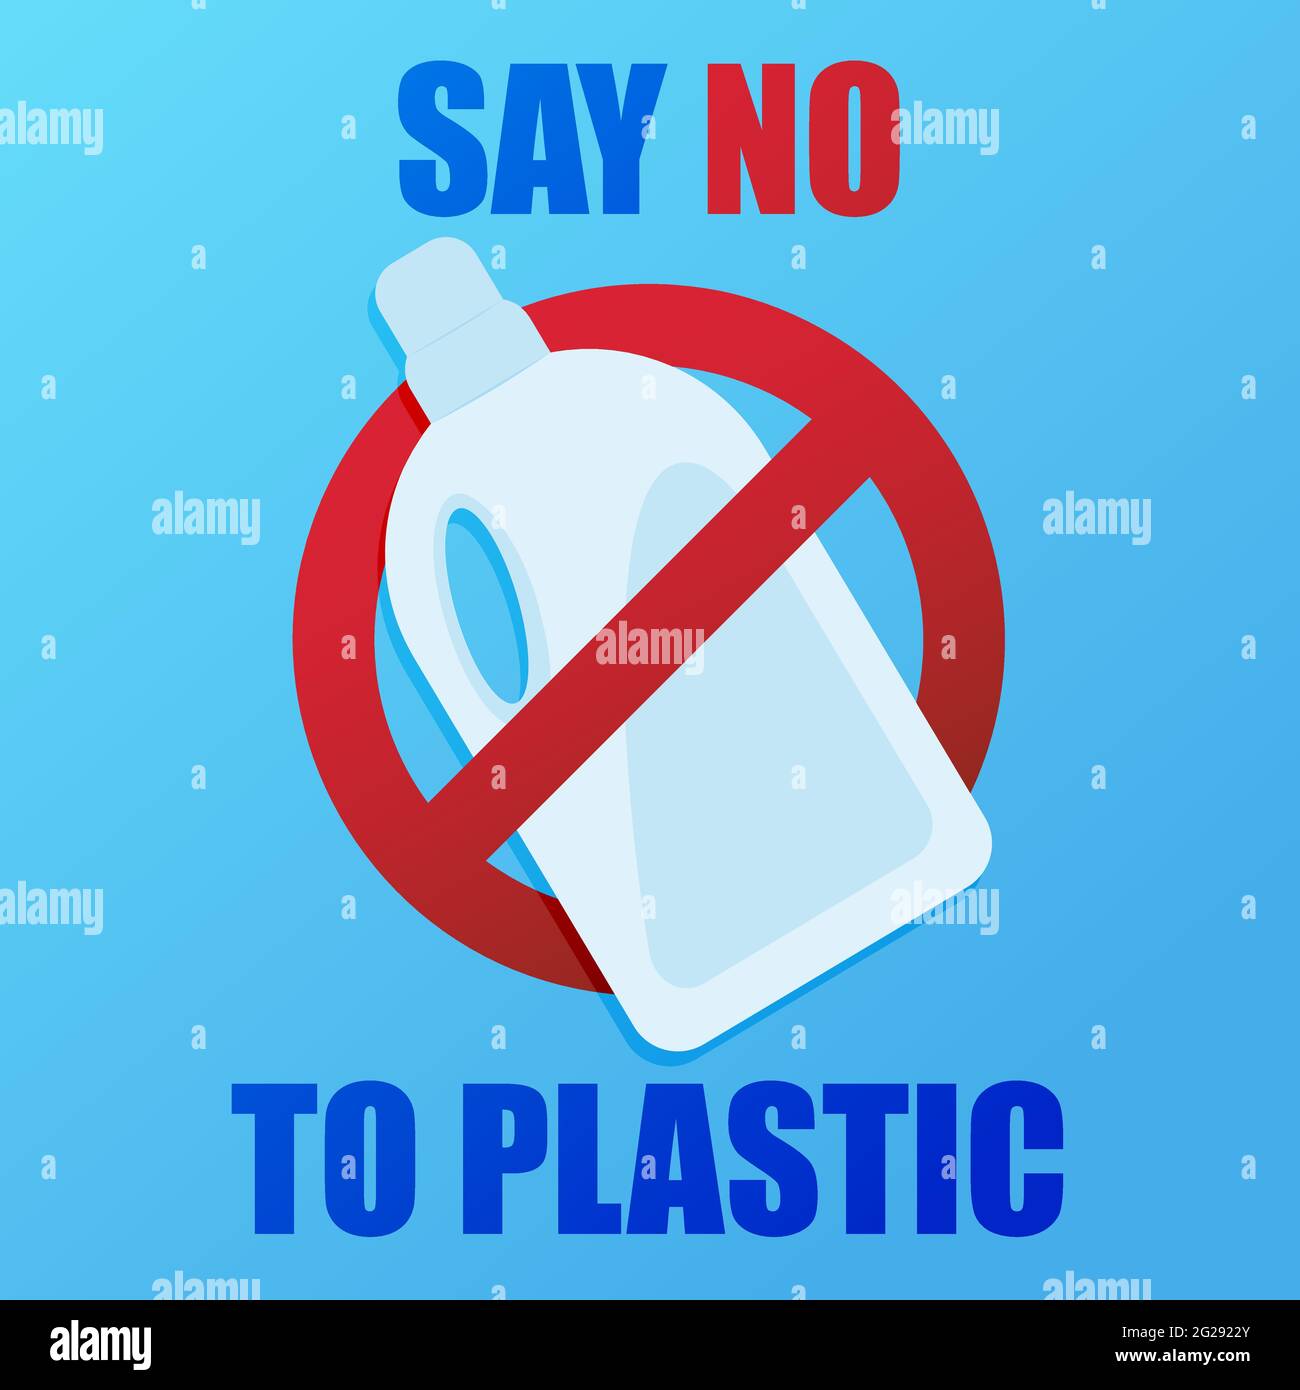 Arrêtez la pollution plastique. Sauver notre Terre. Une bannière avec un panneau d'interdiction rouge traverse la bouteille de détergent en plastique. Affiche environnementale. Illustration de Vecteur